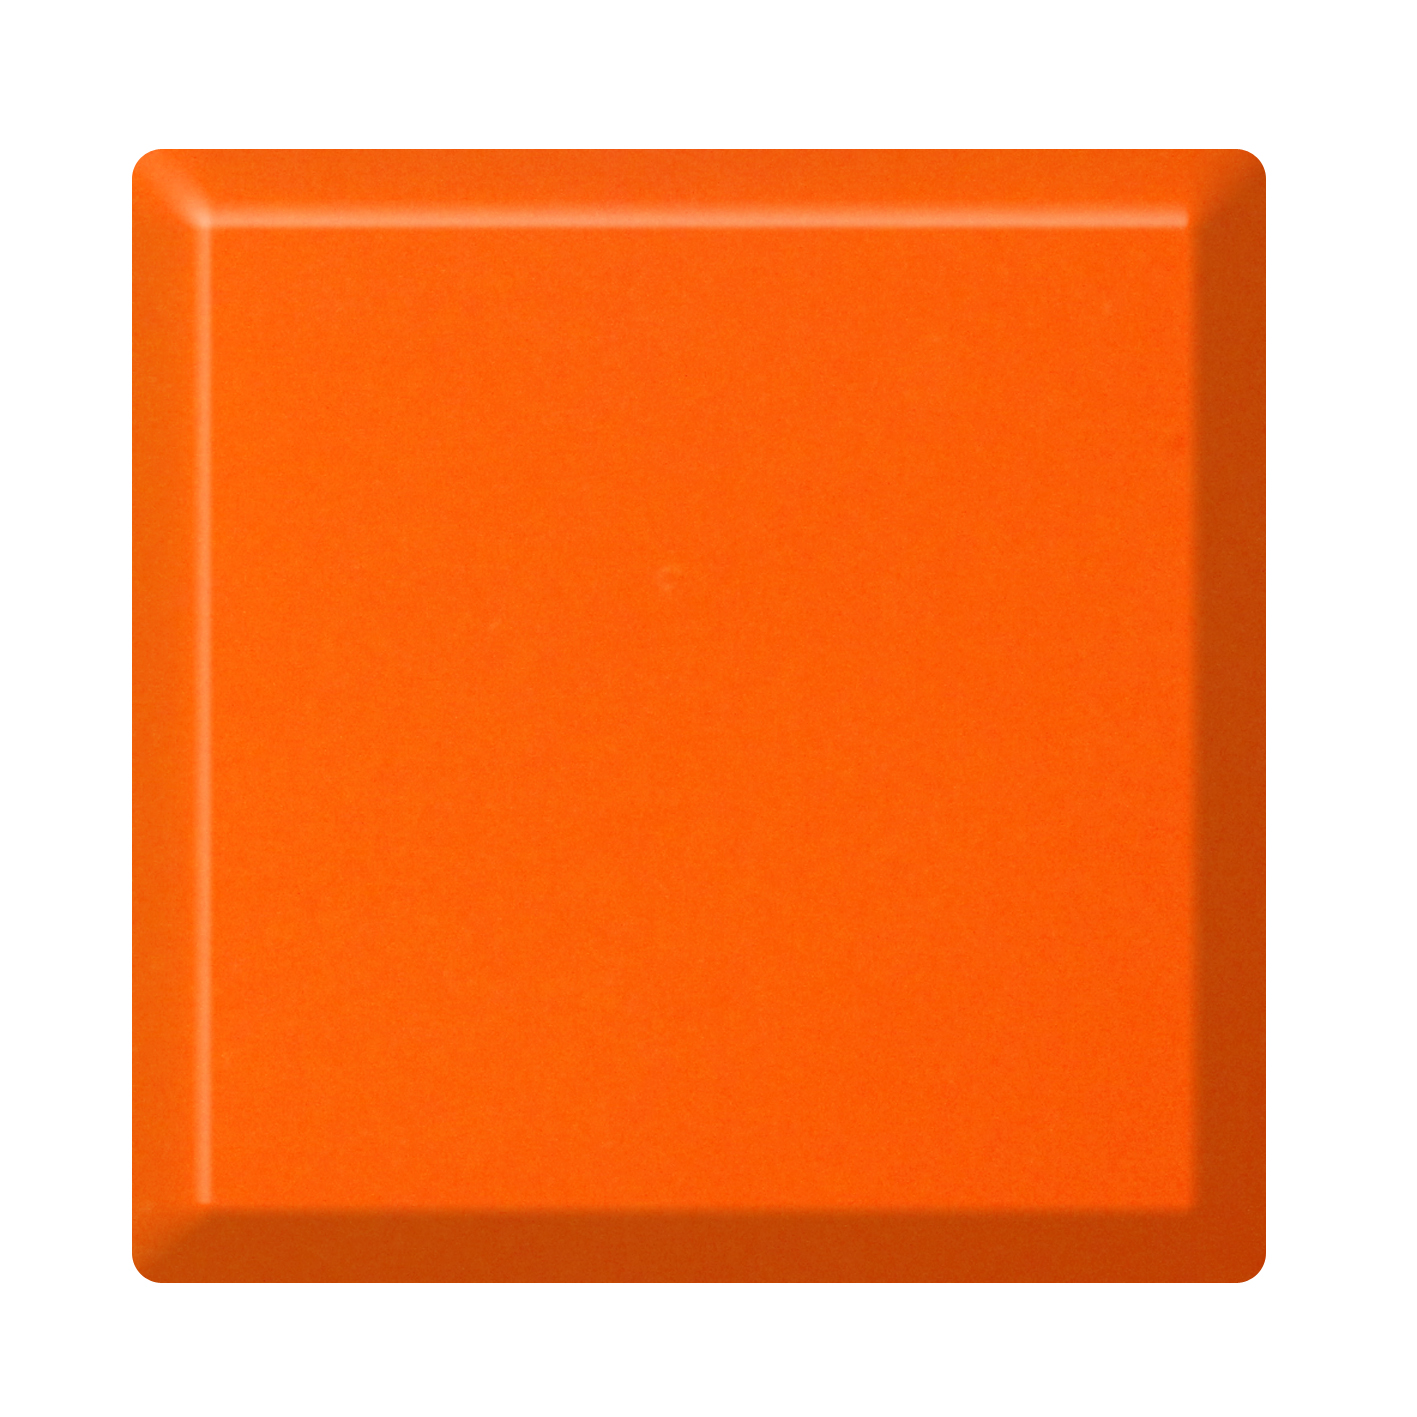 Orange acrylic solid surface sheet